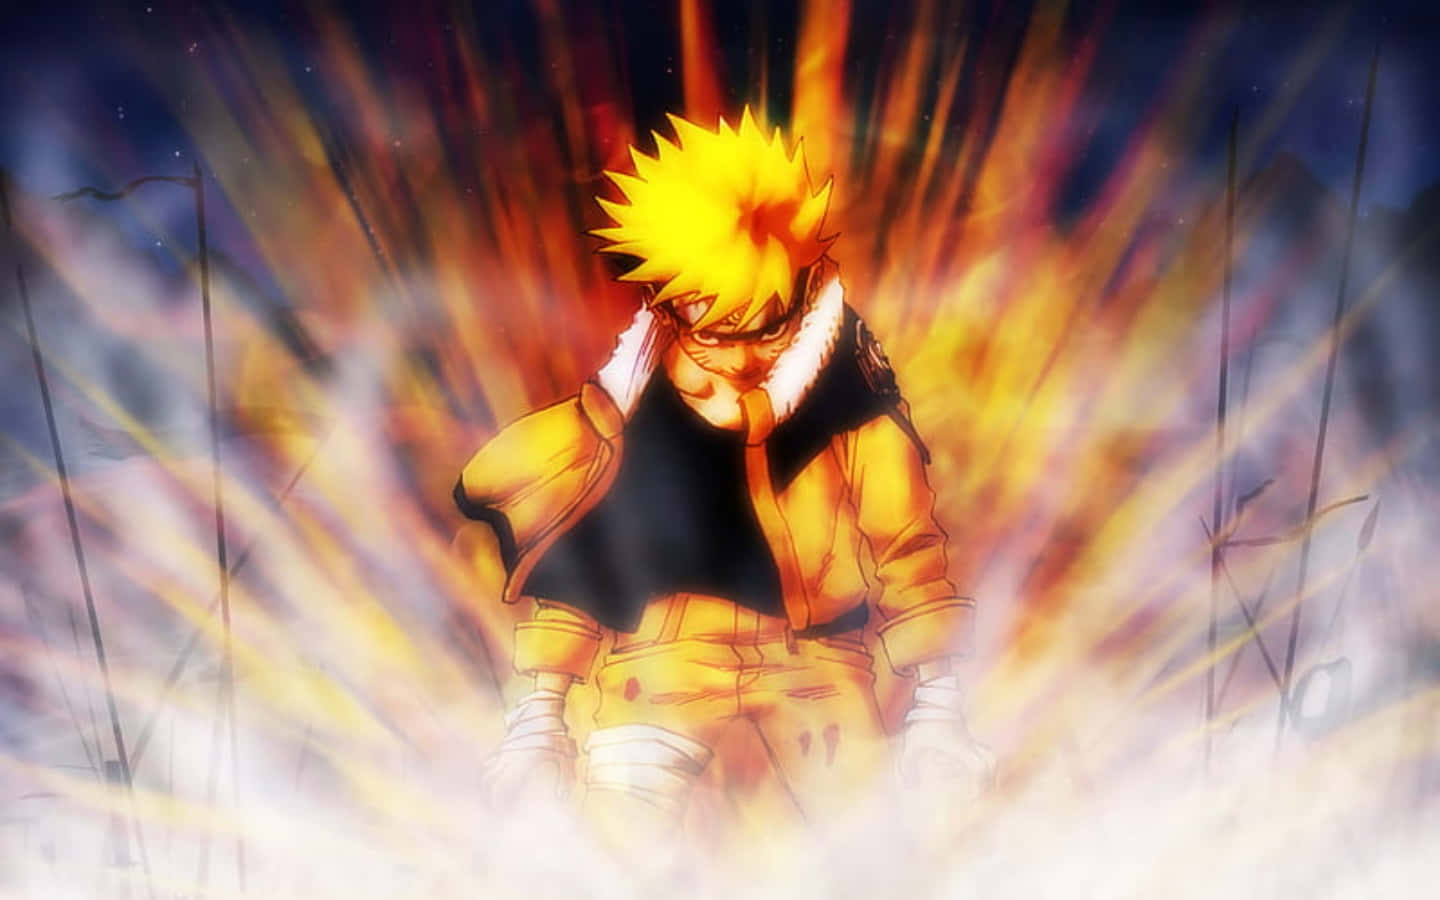 Narutobakgrundsbilder - Naruto Bakgrundsbilder.